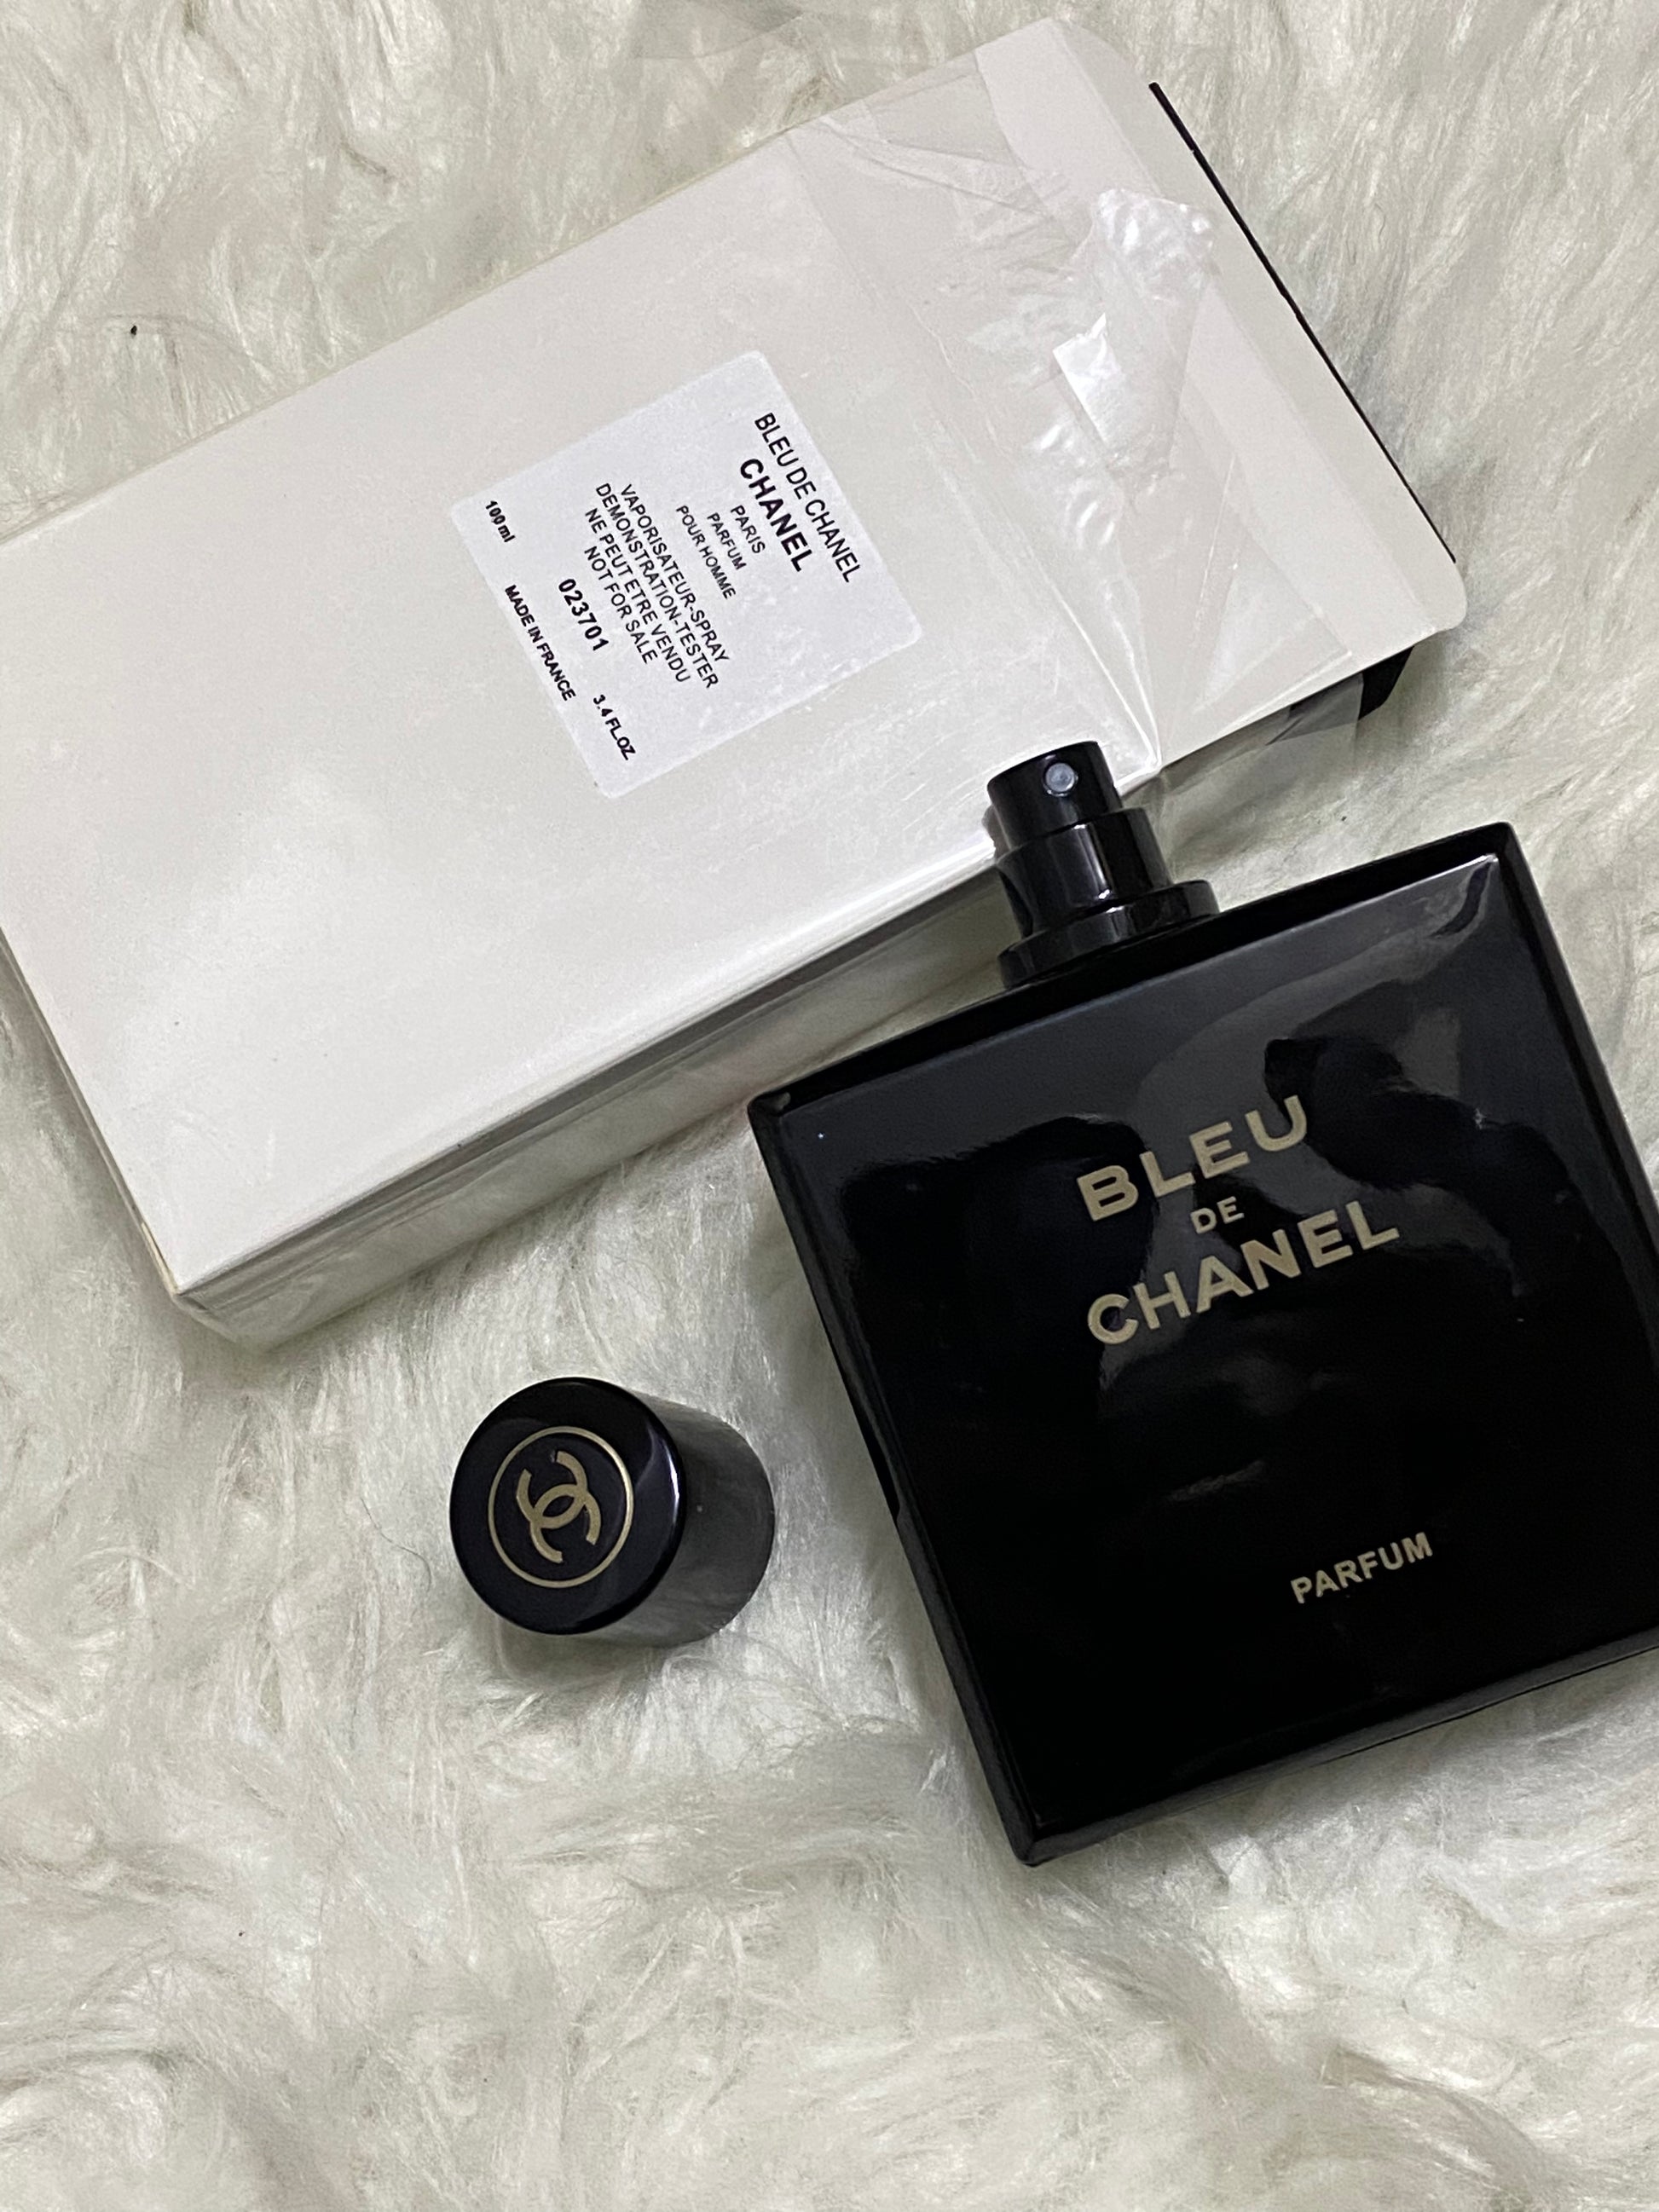 Bleu De Chanel Perfume for sale